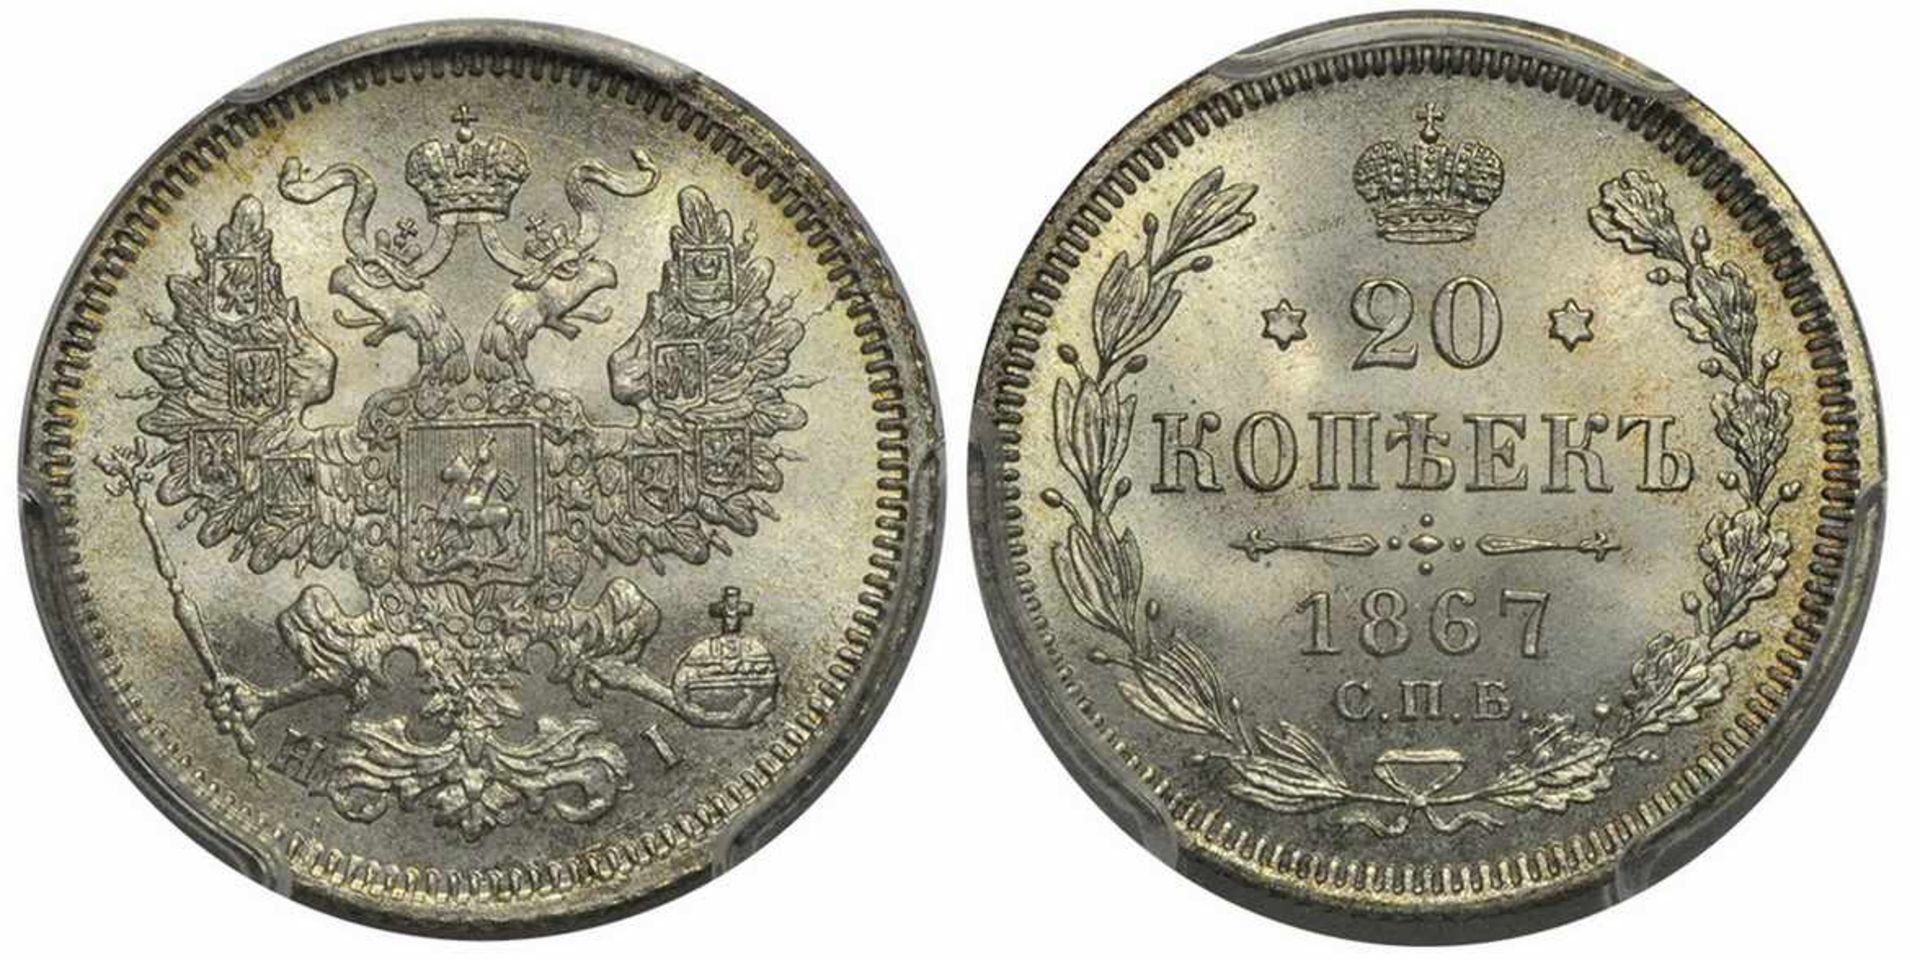 20 kopeks 1867. SPB-HI. PCGS MS6720 kopeks 1867. Saint Petersburg Mint. SPB-HI. Silver. Reeded Edge.